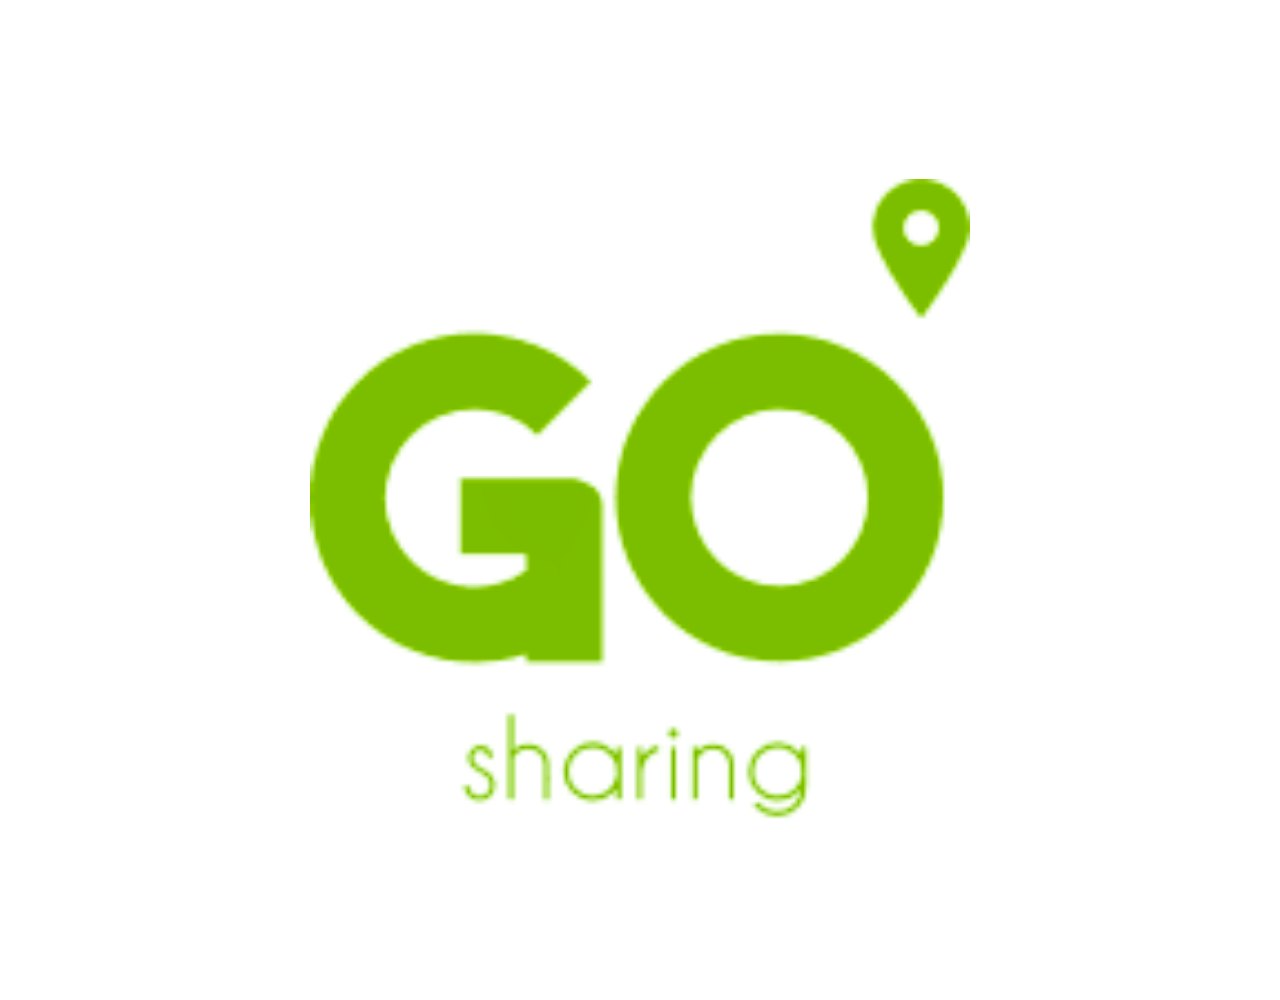 50 rijminuten voor een E-bike van GO sharing! 